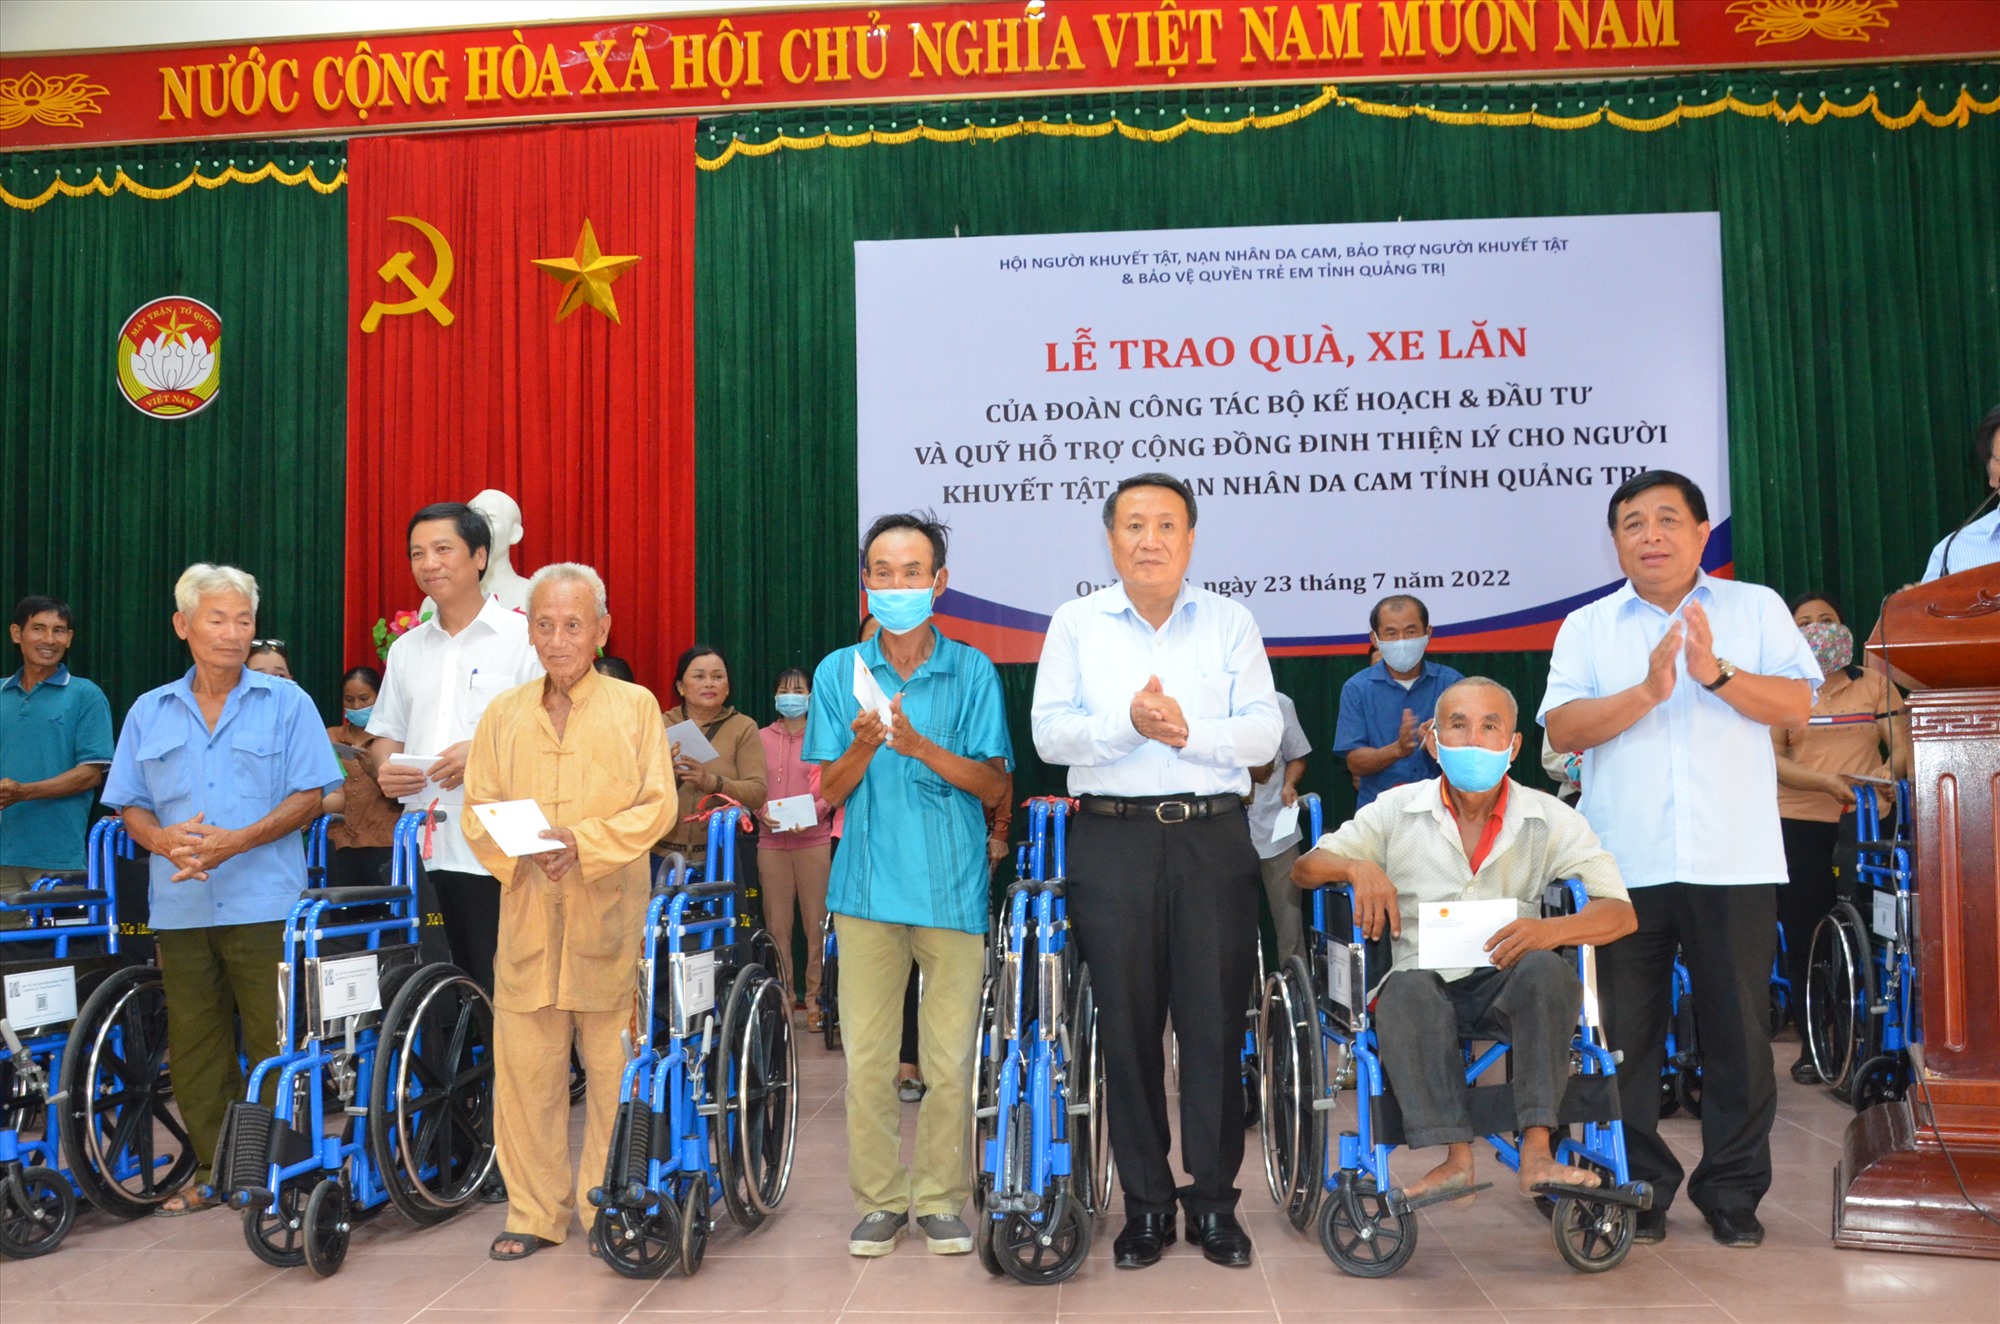 Bộ trưởng Bộ Kế hoạch & Đầu tư Nguyễn Chí Dũng và lãnh đạo tỉnh trao tặng xe lăn cho người khuyết tật và nạn nhân dan cam - Ảnh: Lê Minh